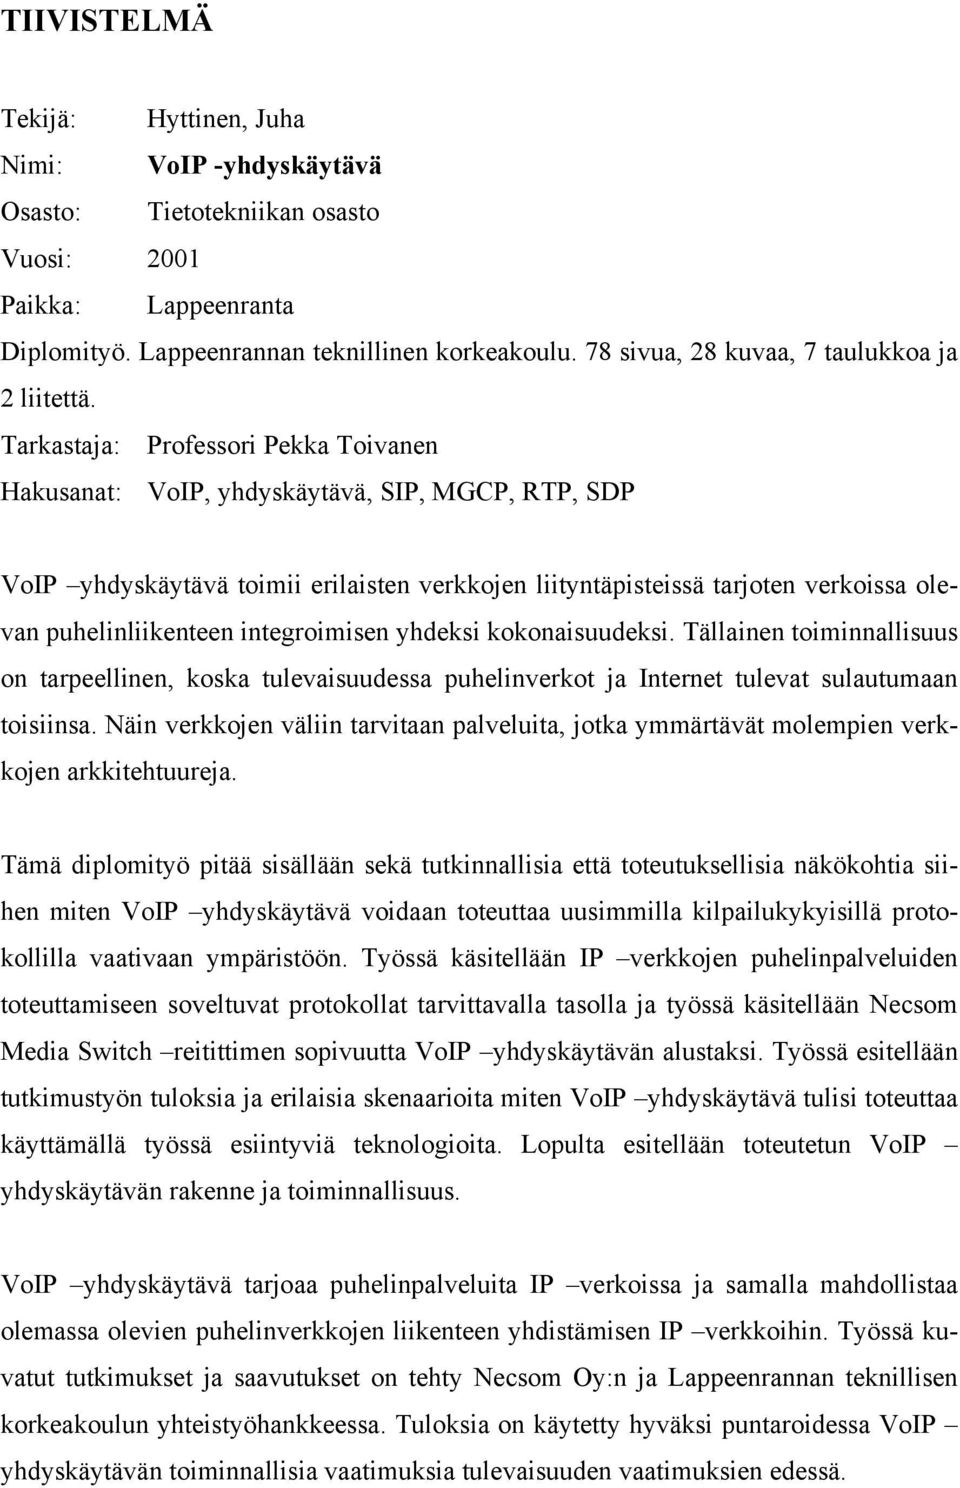 Tarkastaja: Professori Pekka Toivanen Hakusanat: VoIP, yhdyskäytävä, SIP, MGCP, RTP, SDP VoIP yhdyskäytävä toimii erilaisten verkkojen liityntäpisteissä tarjoten verkoissa olevan puhelinliikenteen